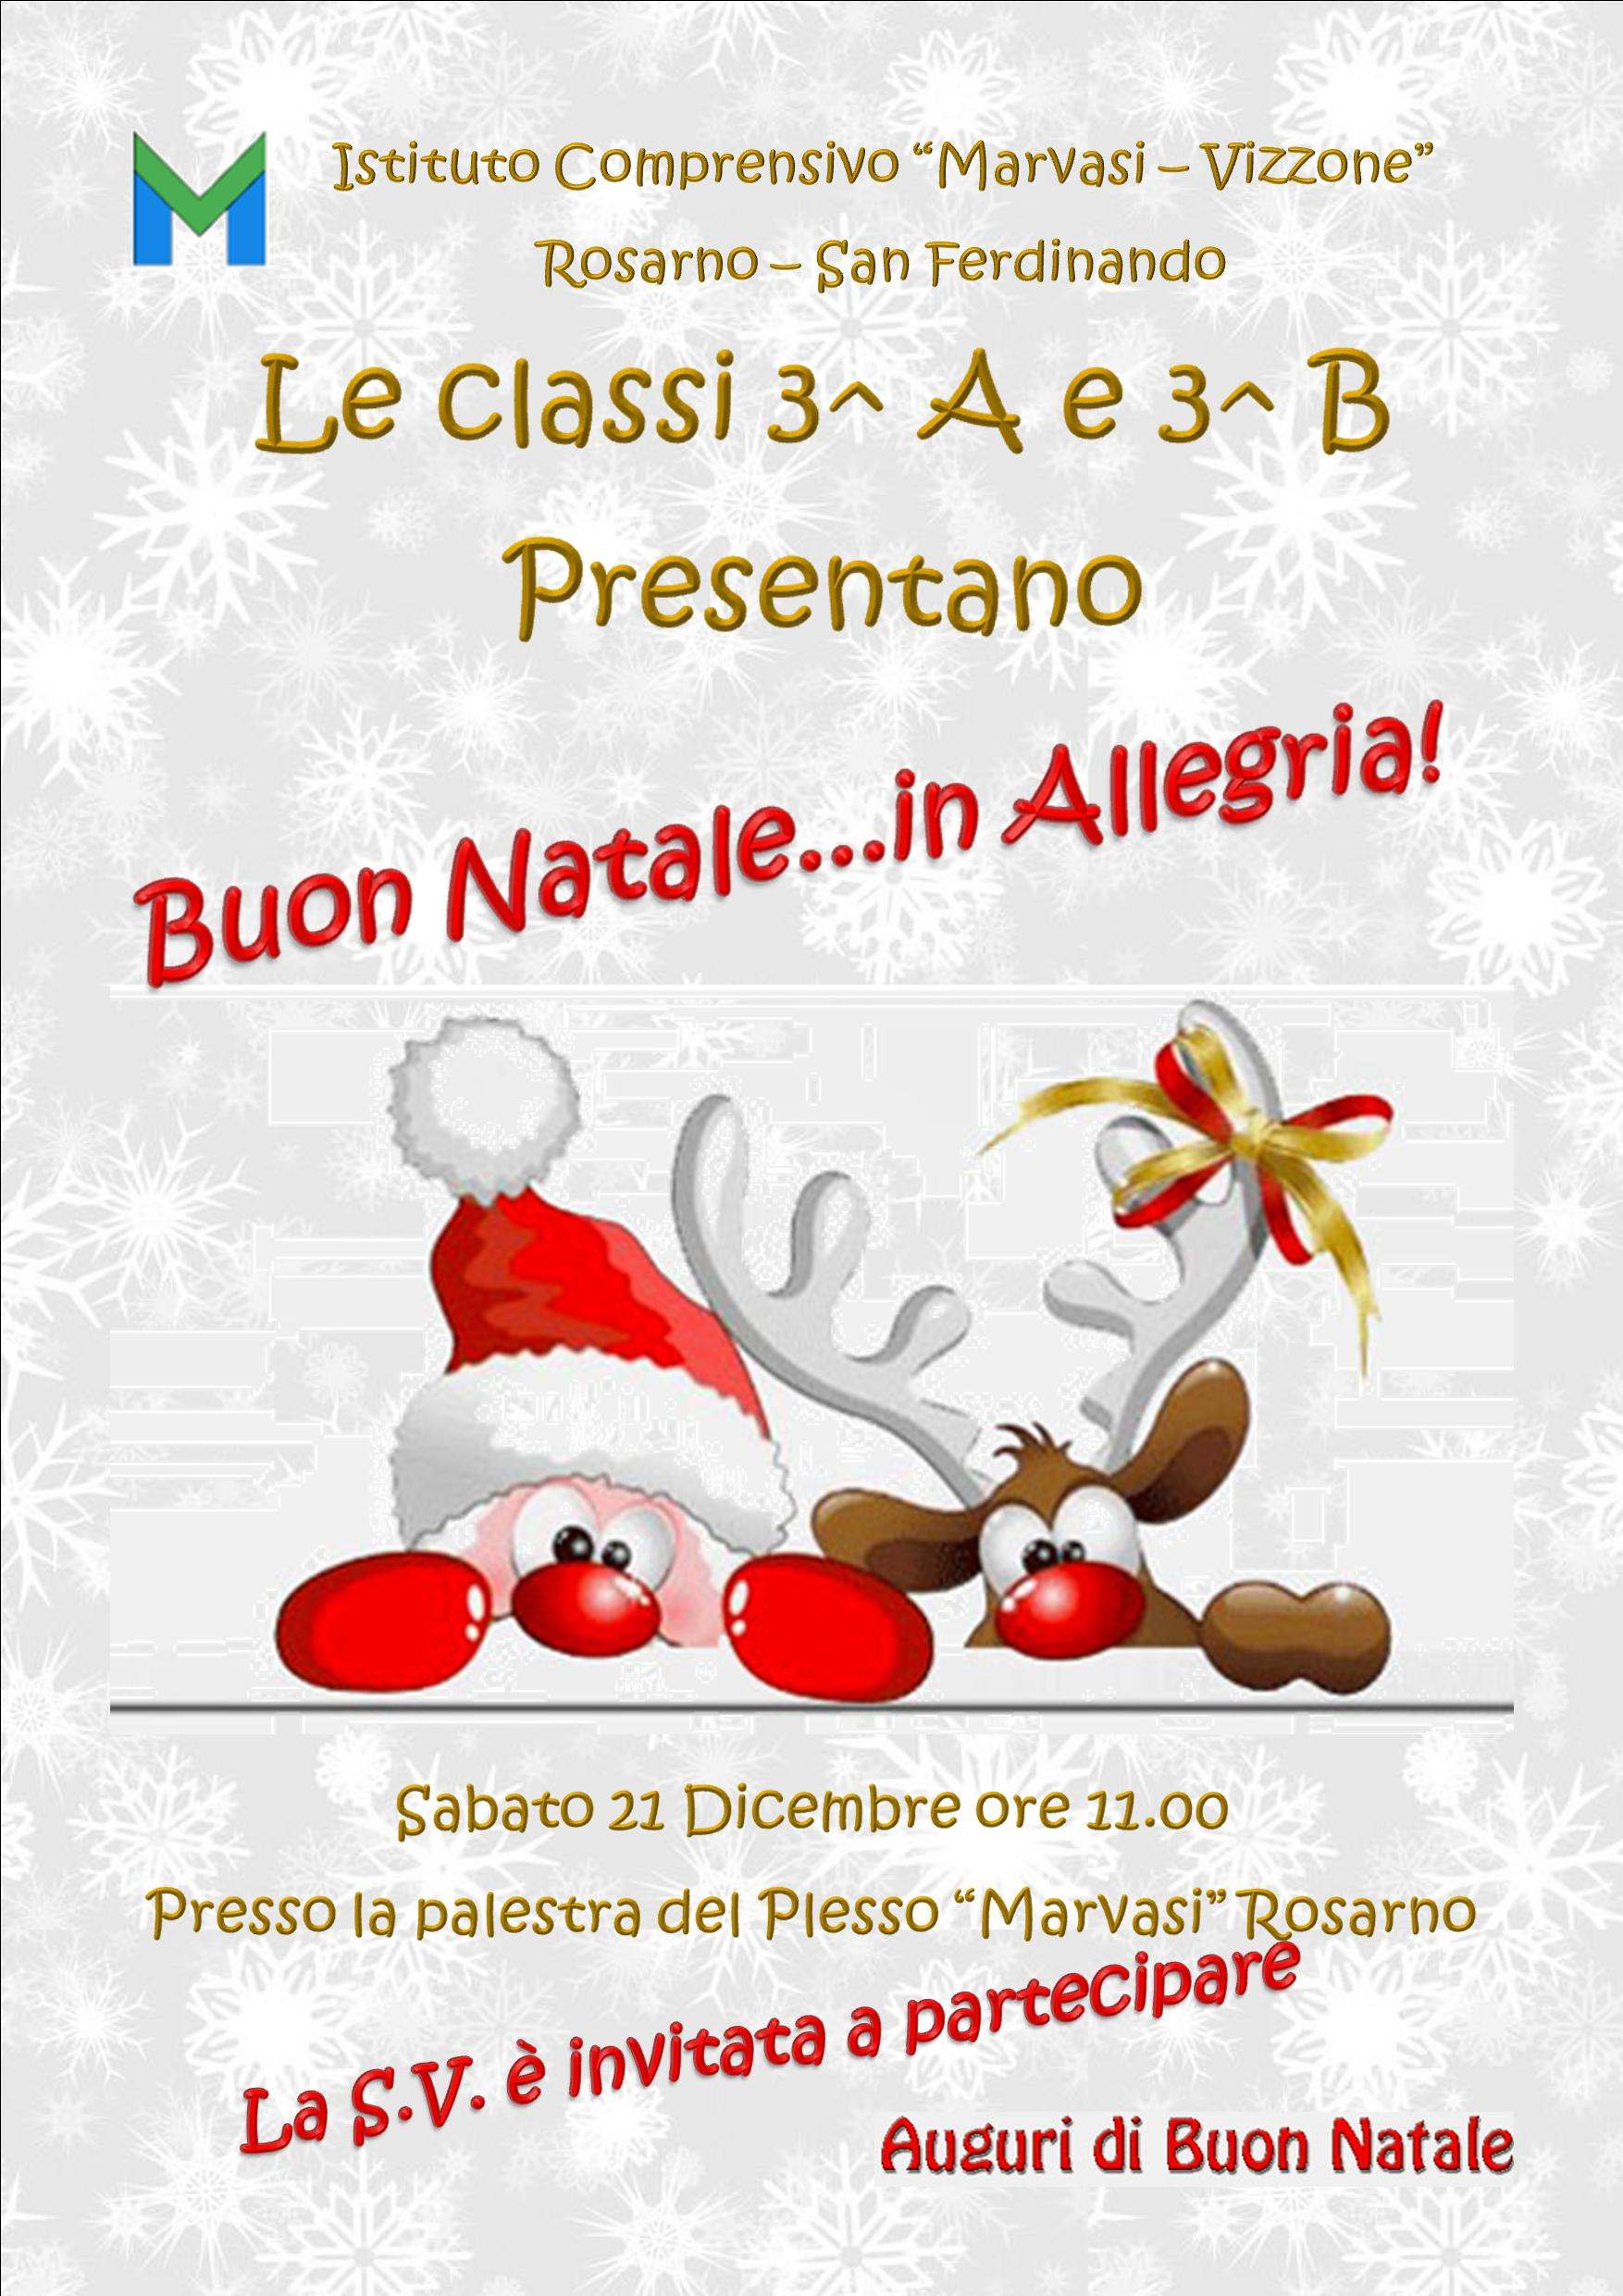 Buon Natale In Allegria Testo.Buon Natale In Allegria Istituto Comprensivo Marvasi Vizzone Scuola Pubblica Rosarno San Ferdinando